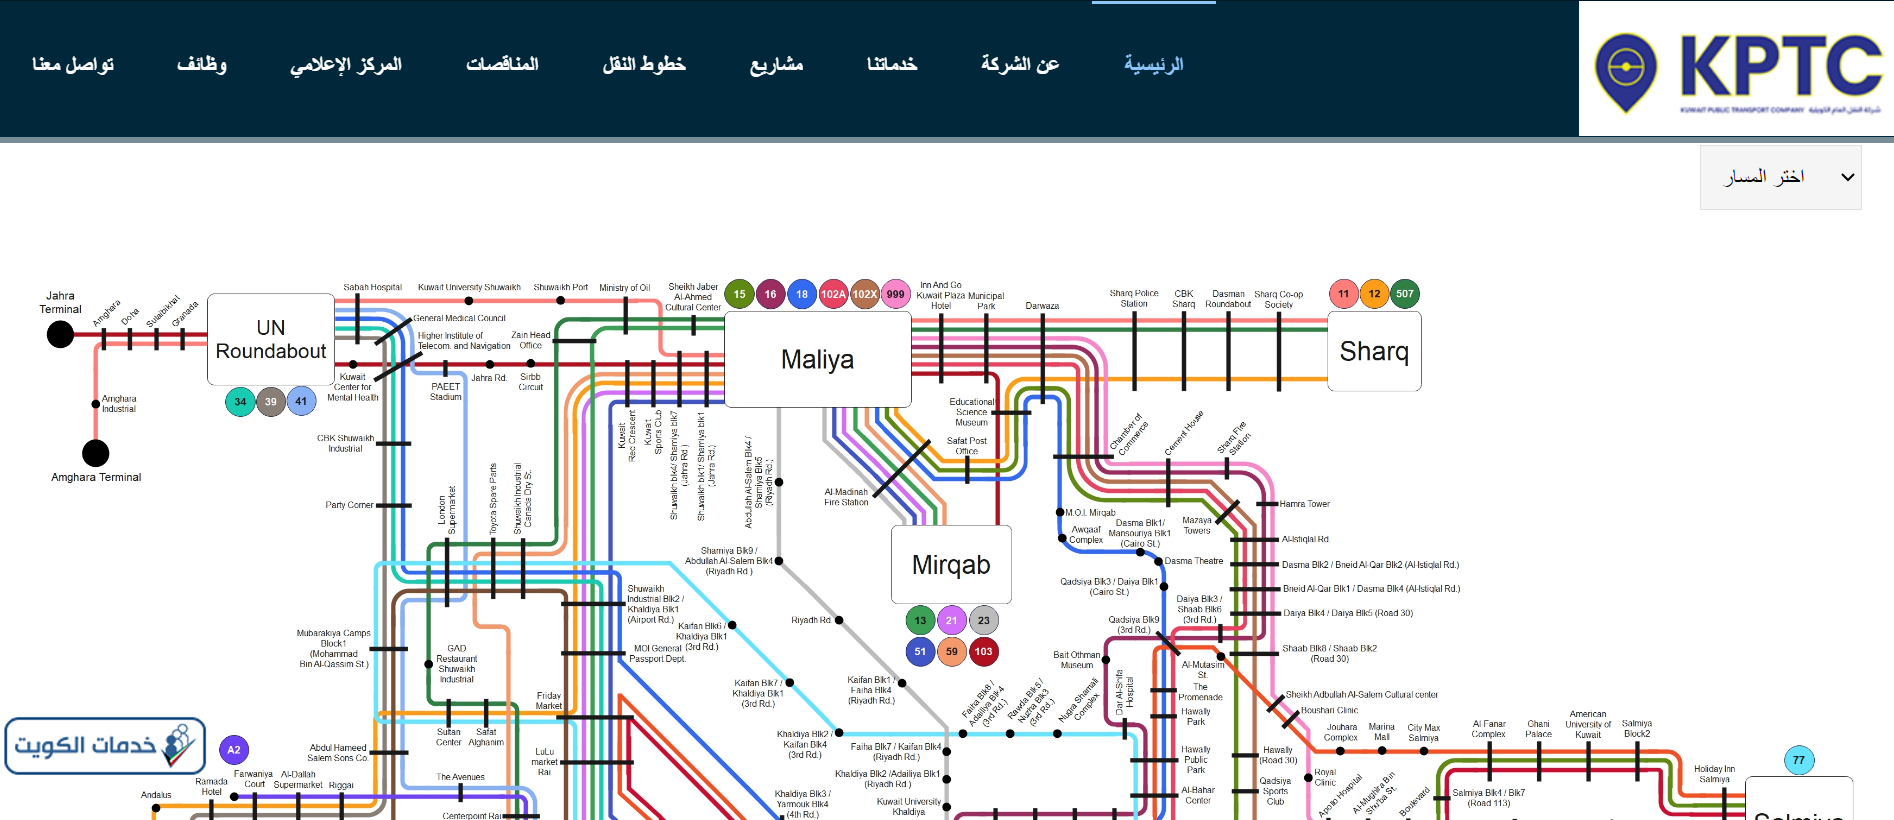 كيفية الاستعلام عن خطوط باصات النقل العام الكويتية